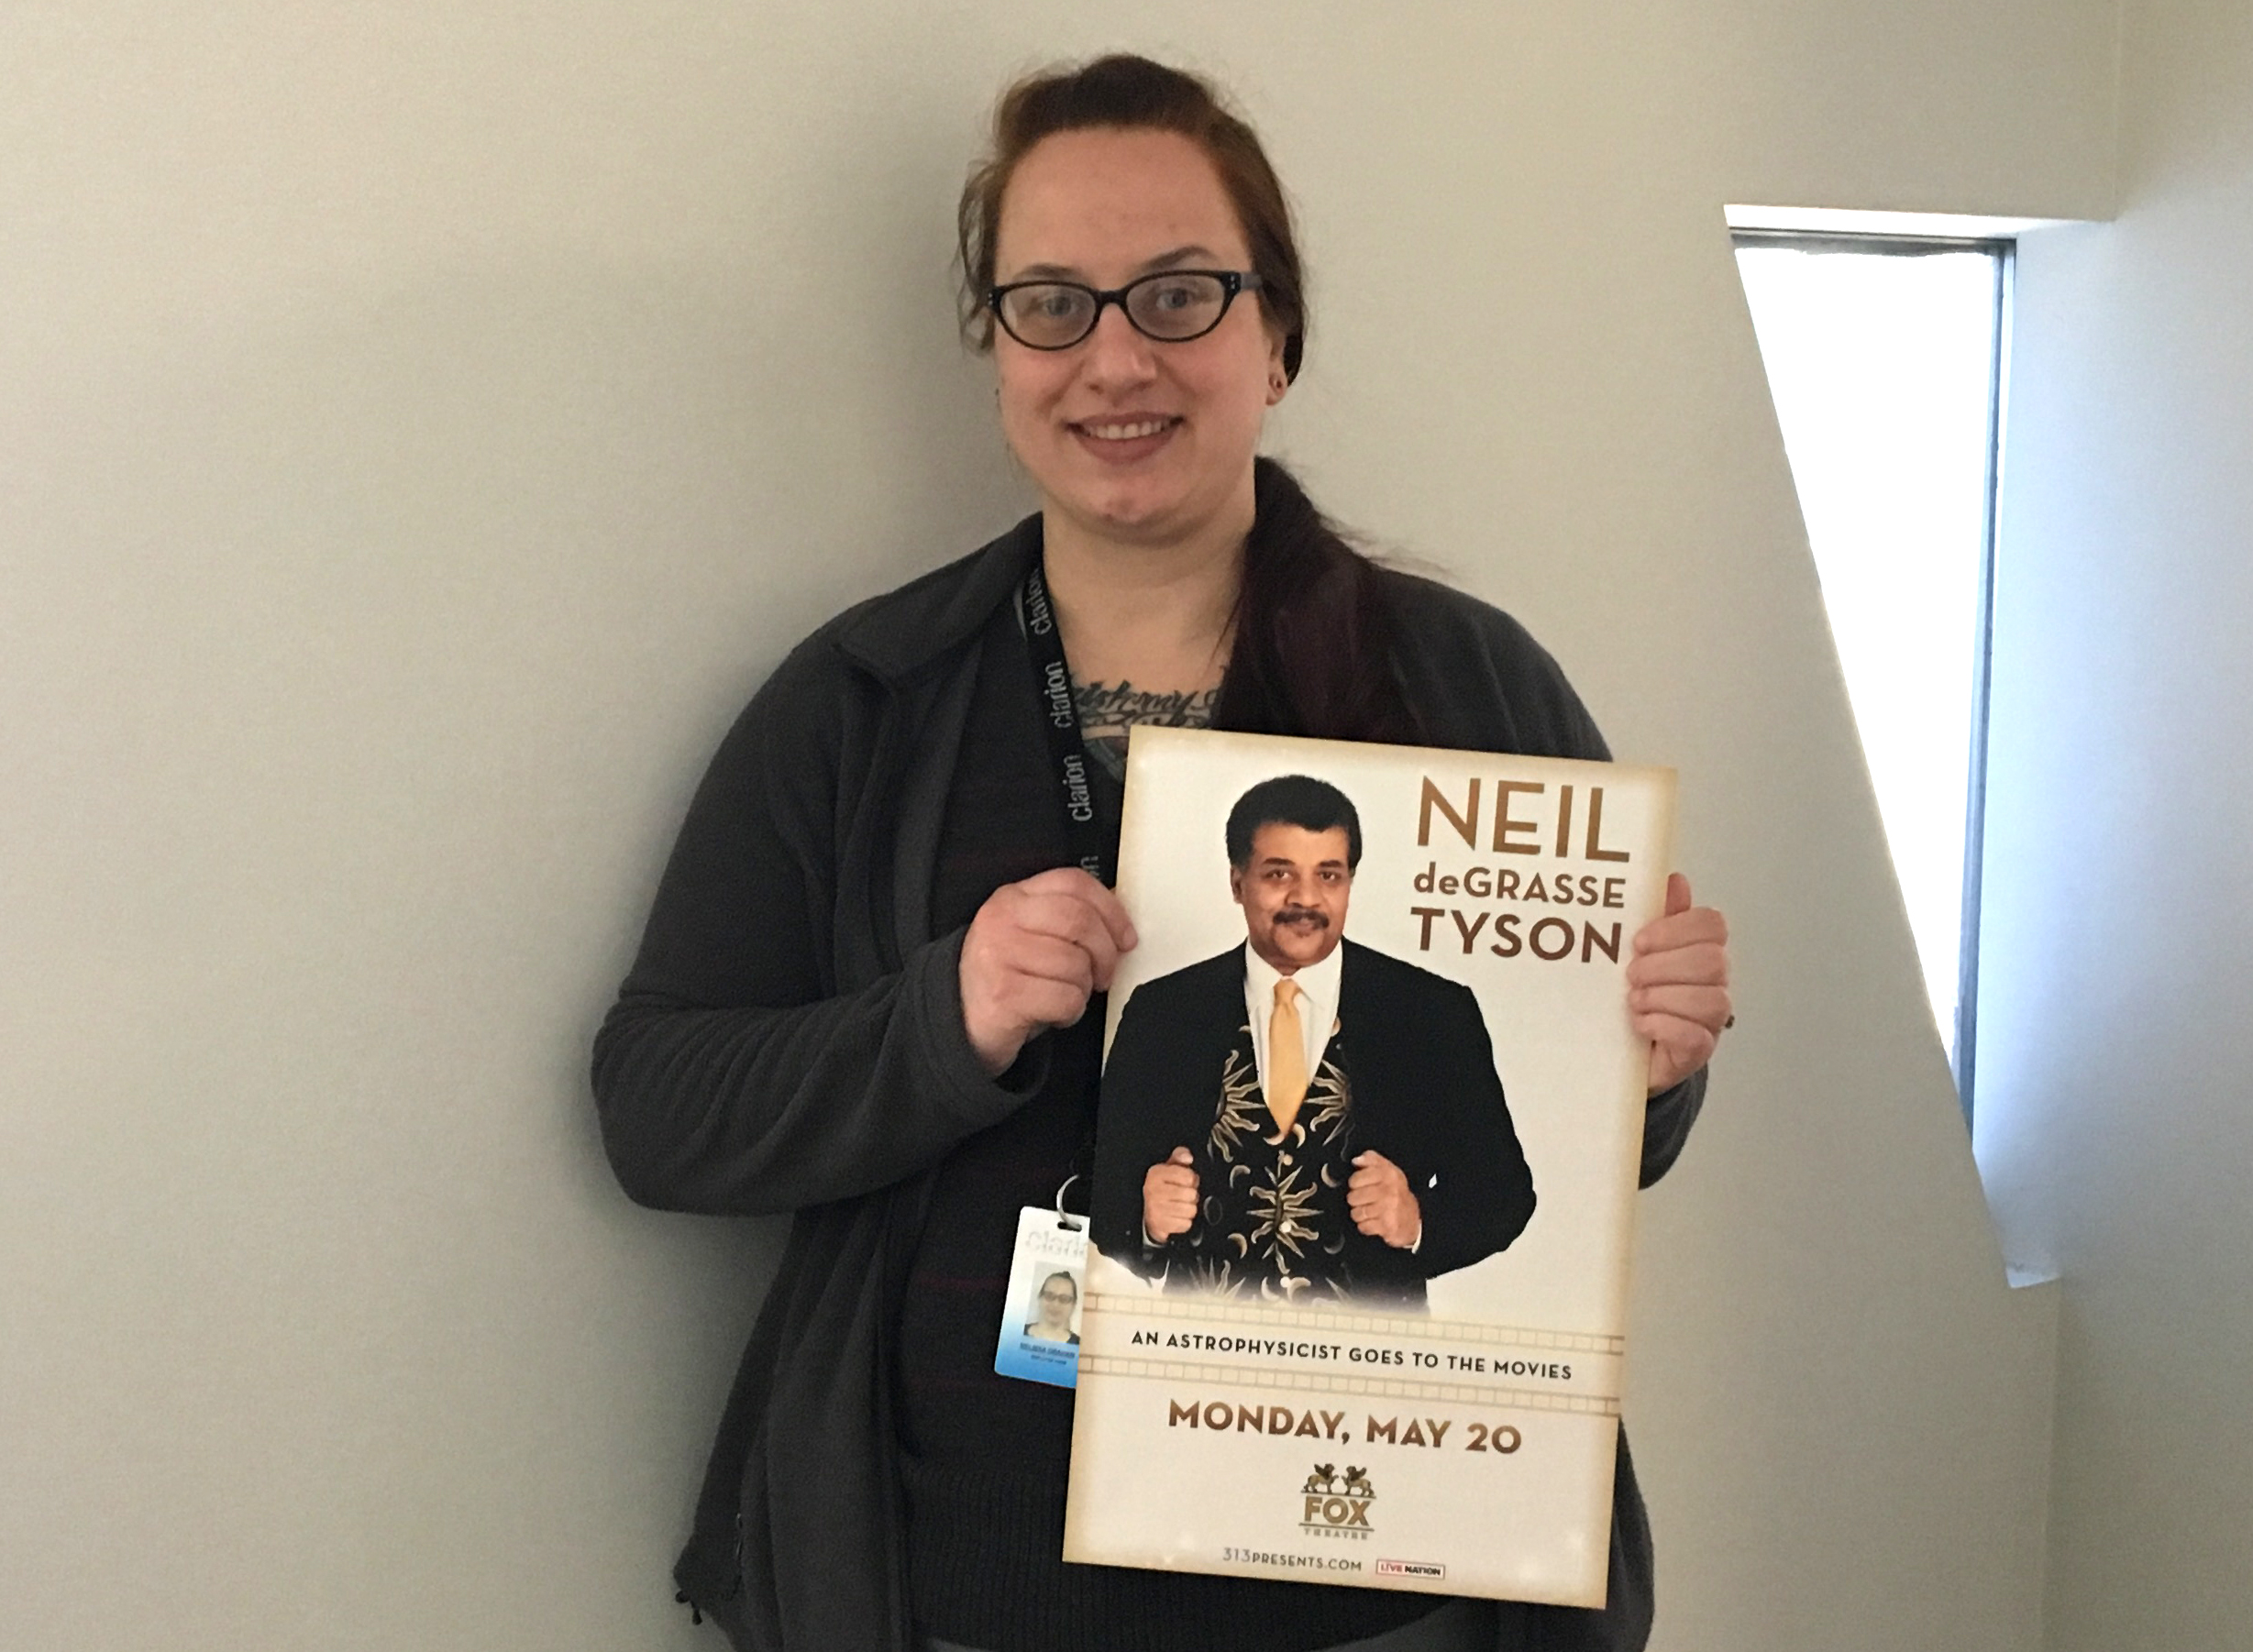 Melissa holding Neil deGrasse Tyson poster